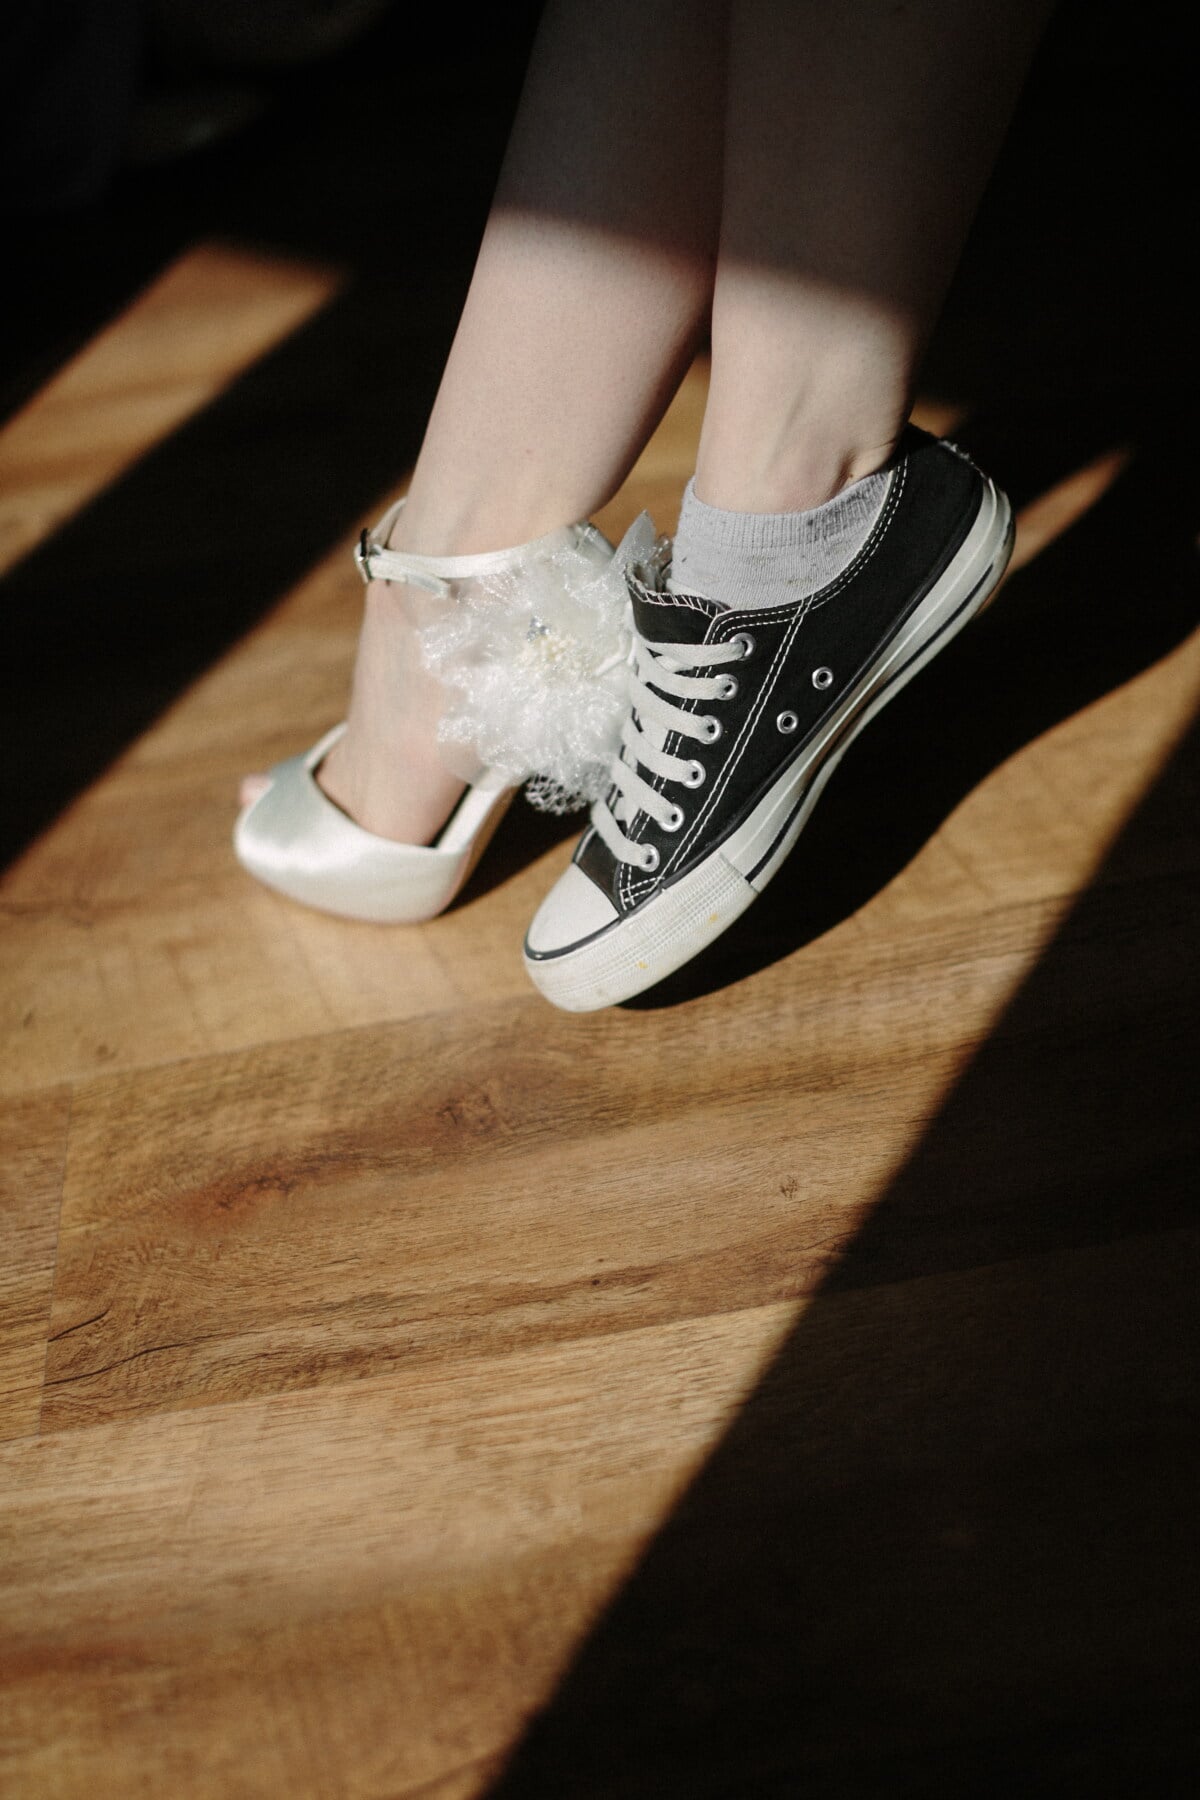 Sepatu, sandal, sepatu kets, elegan, hitam dan putih, pernikahan, tanpa alas kaki, pengantin, kaki, kaki